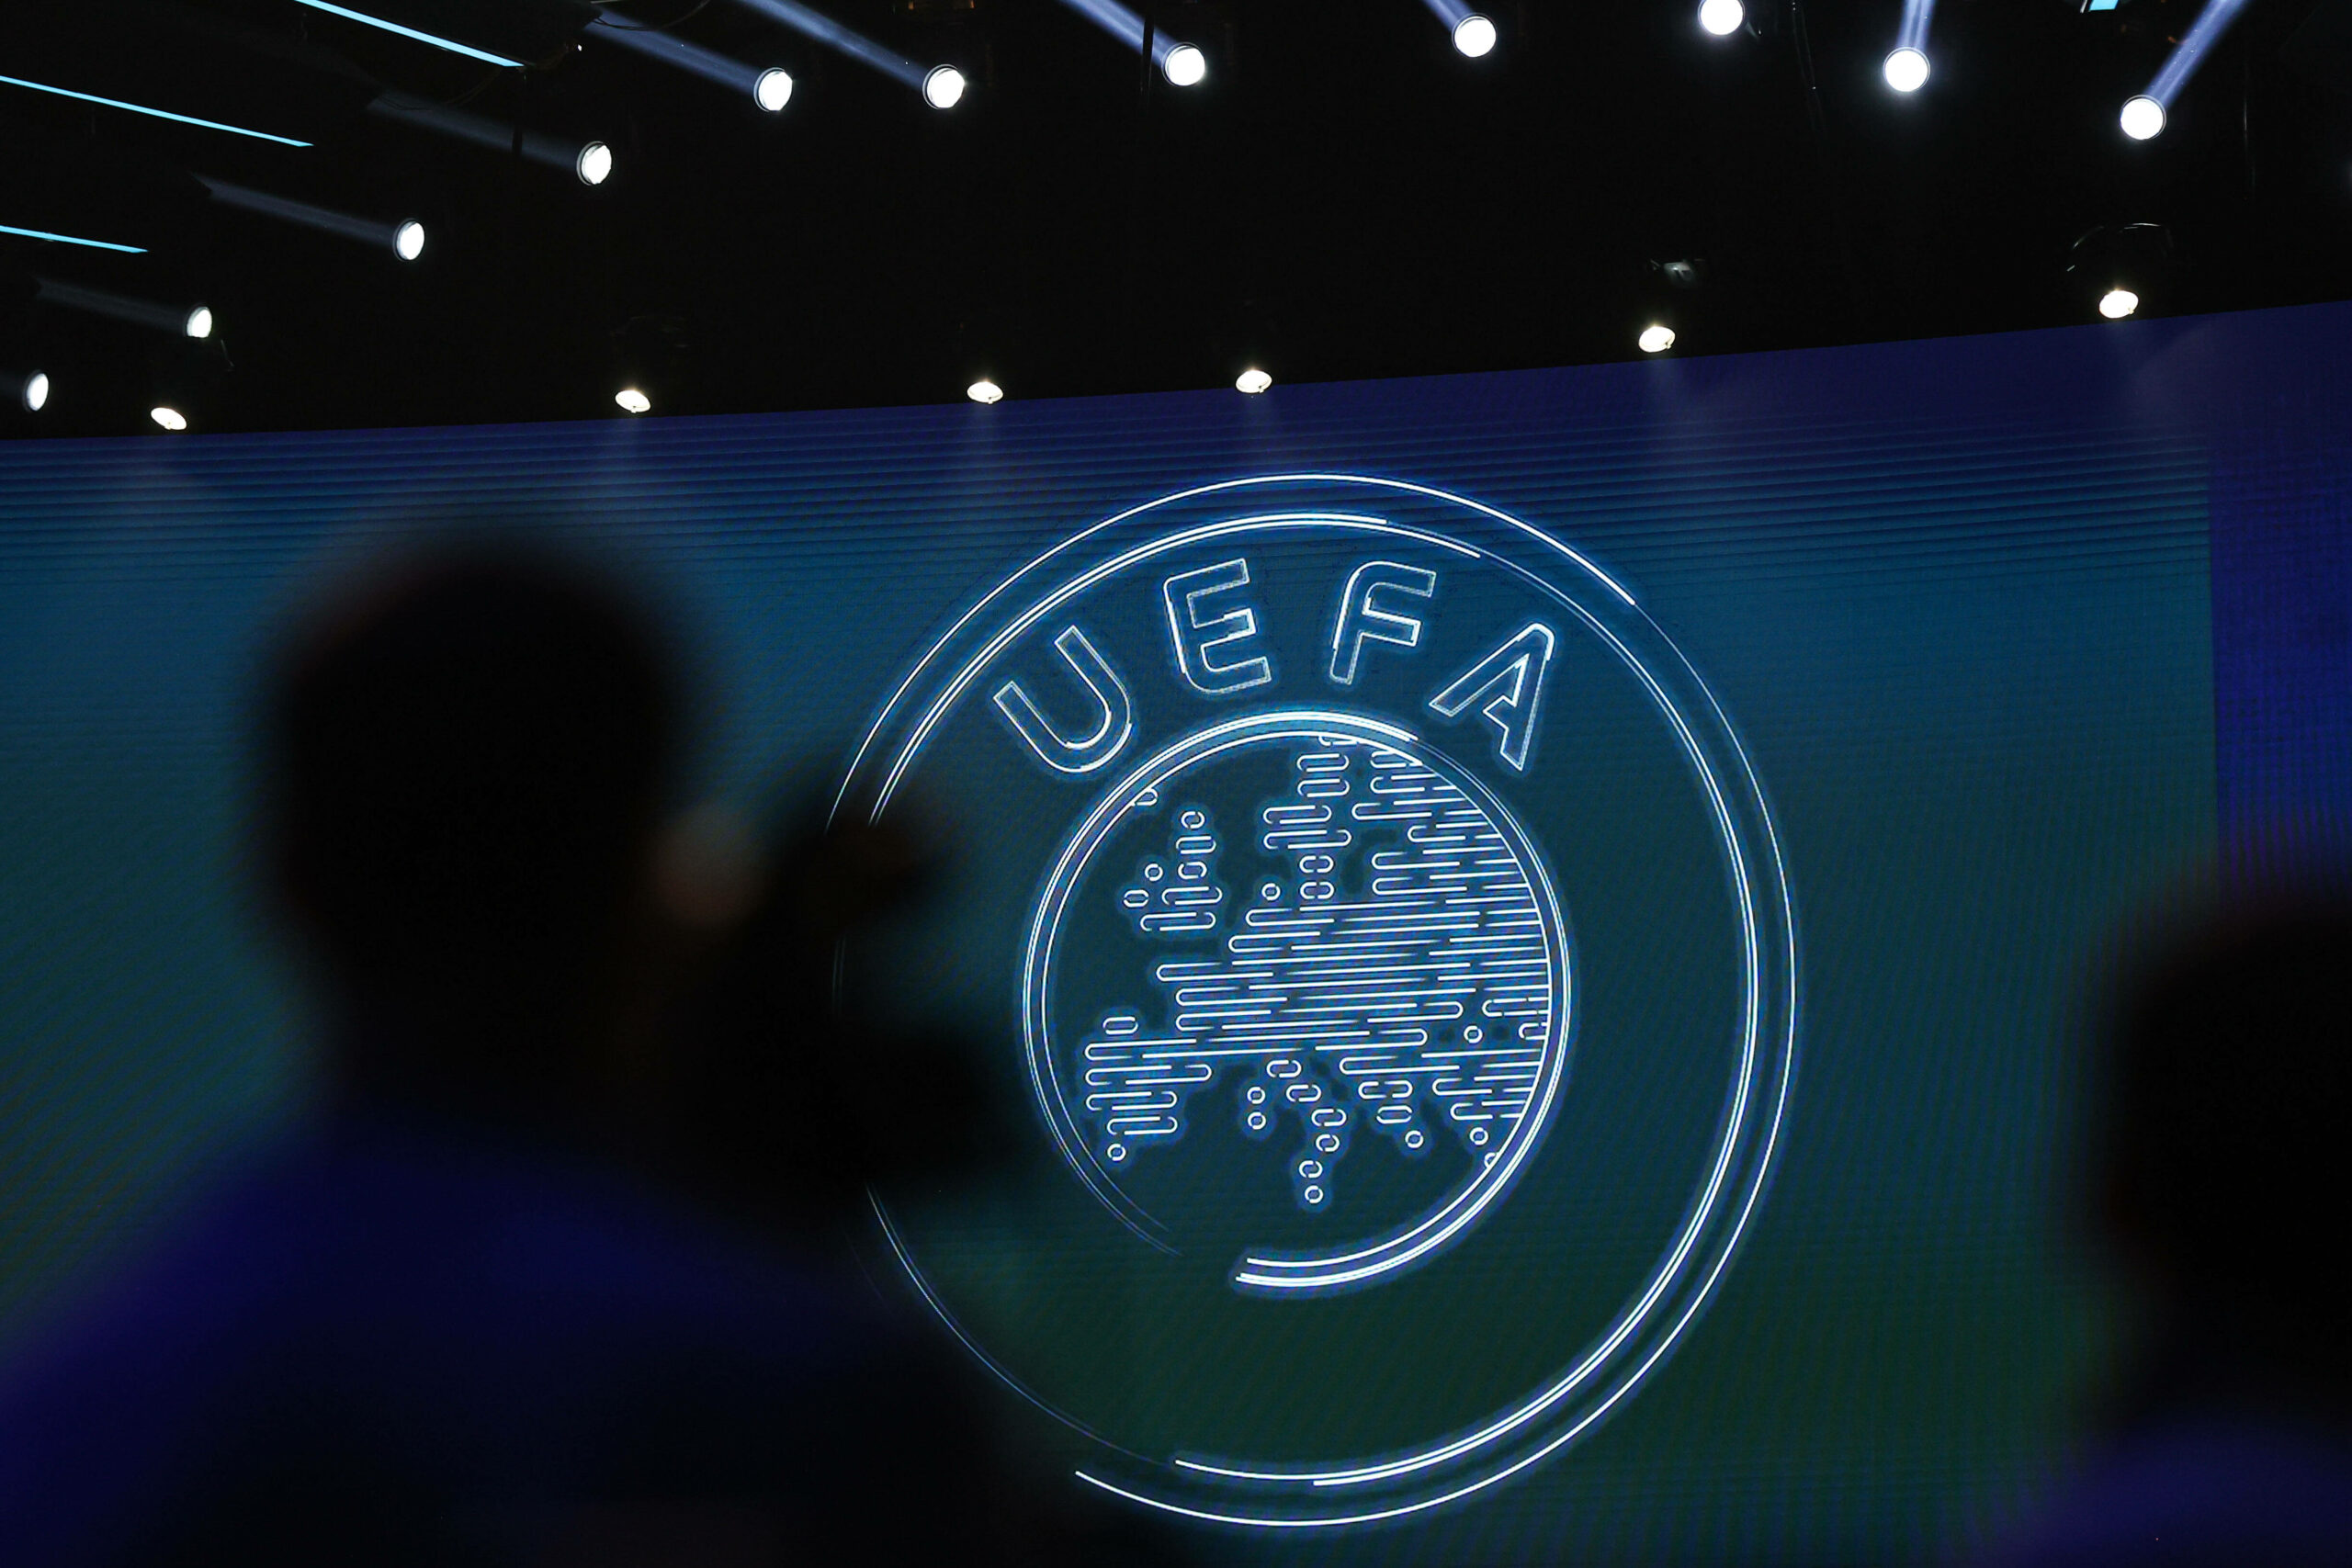 Immer wieder versucht die UEFA durch neue Ideen den Fußball zu verändern